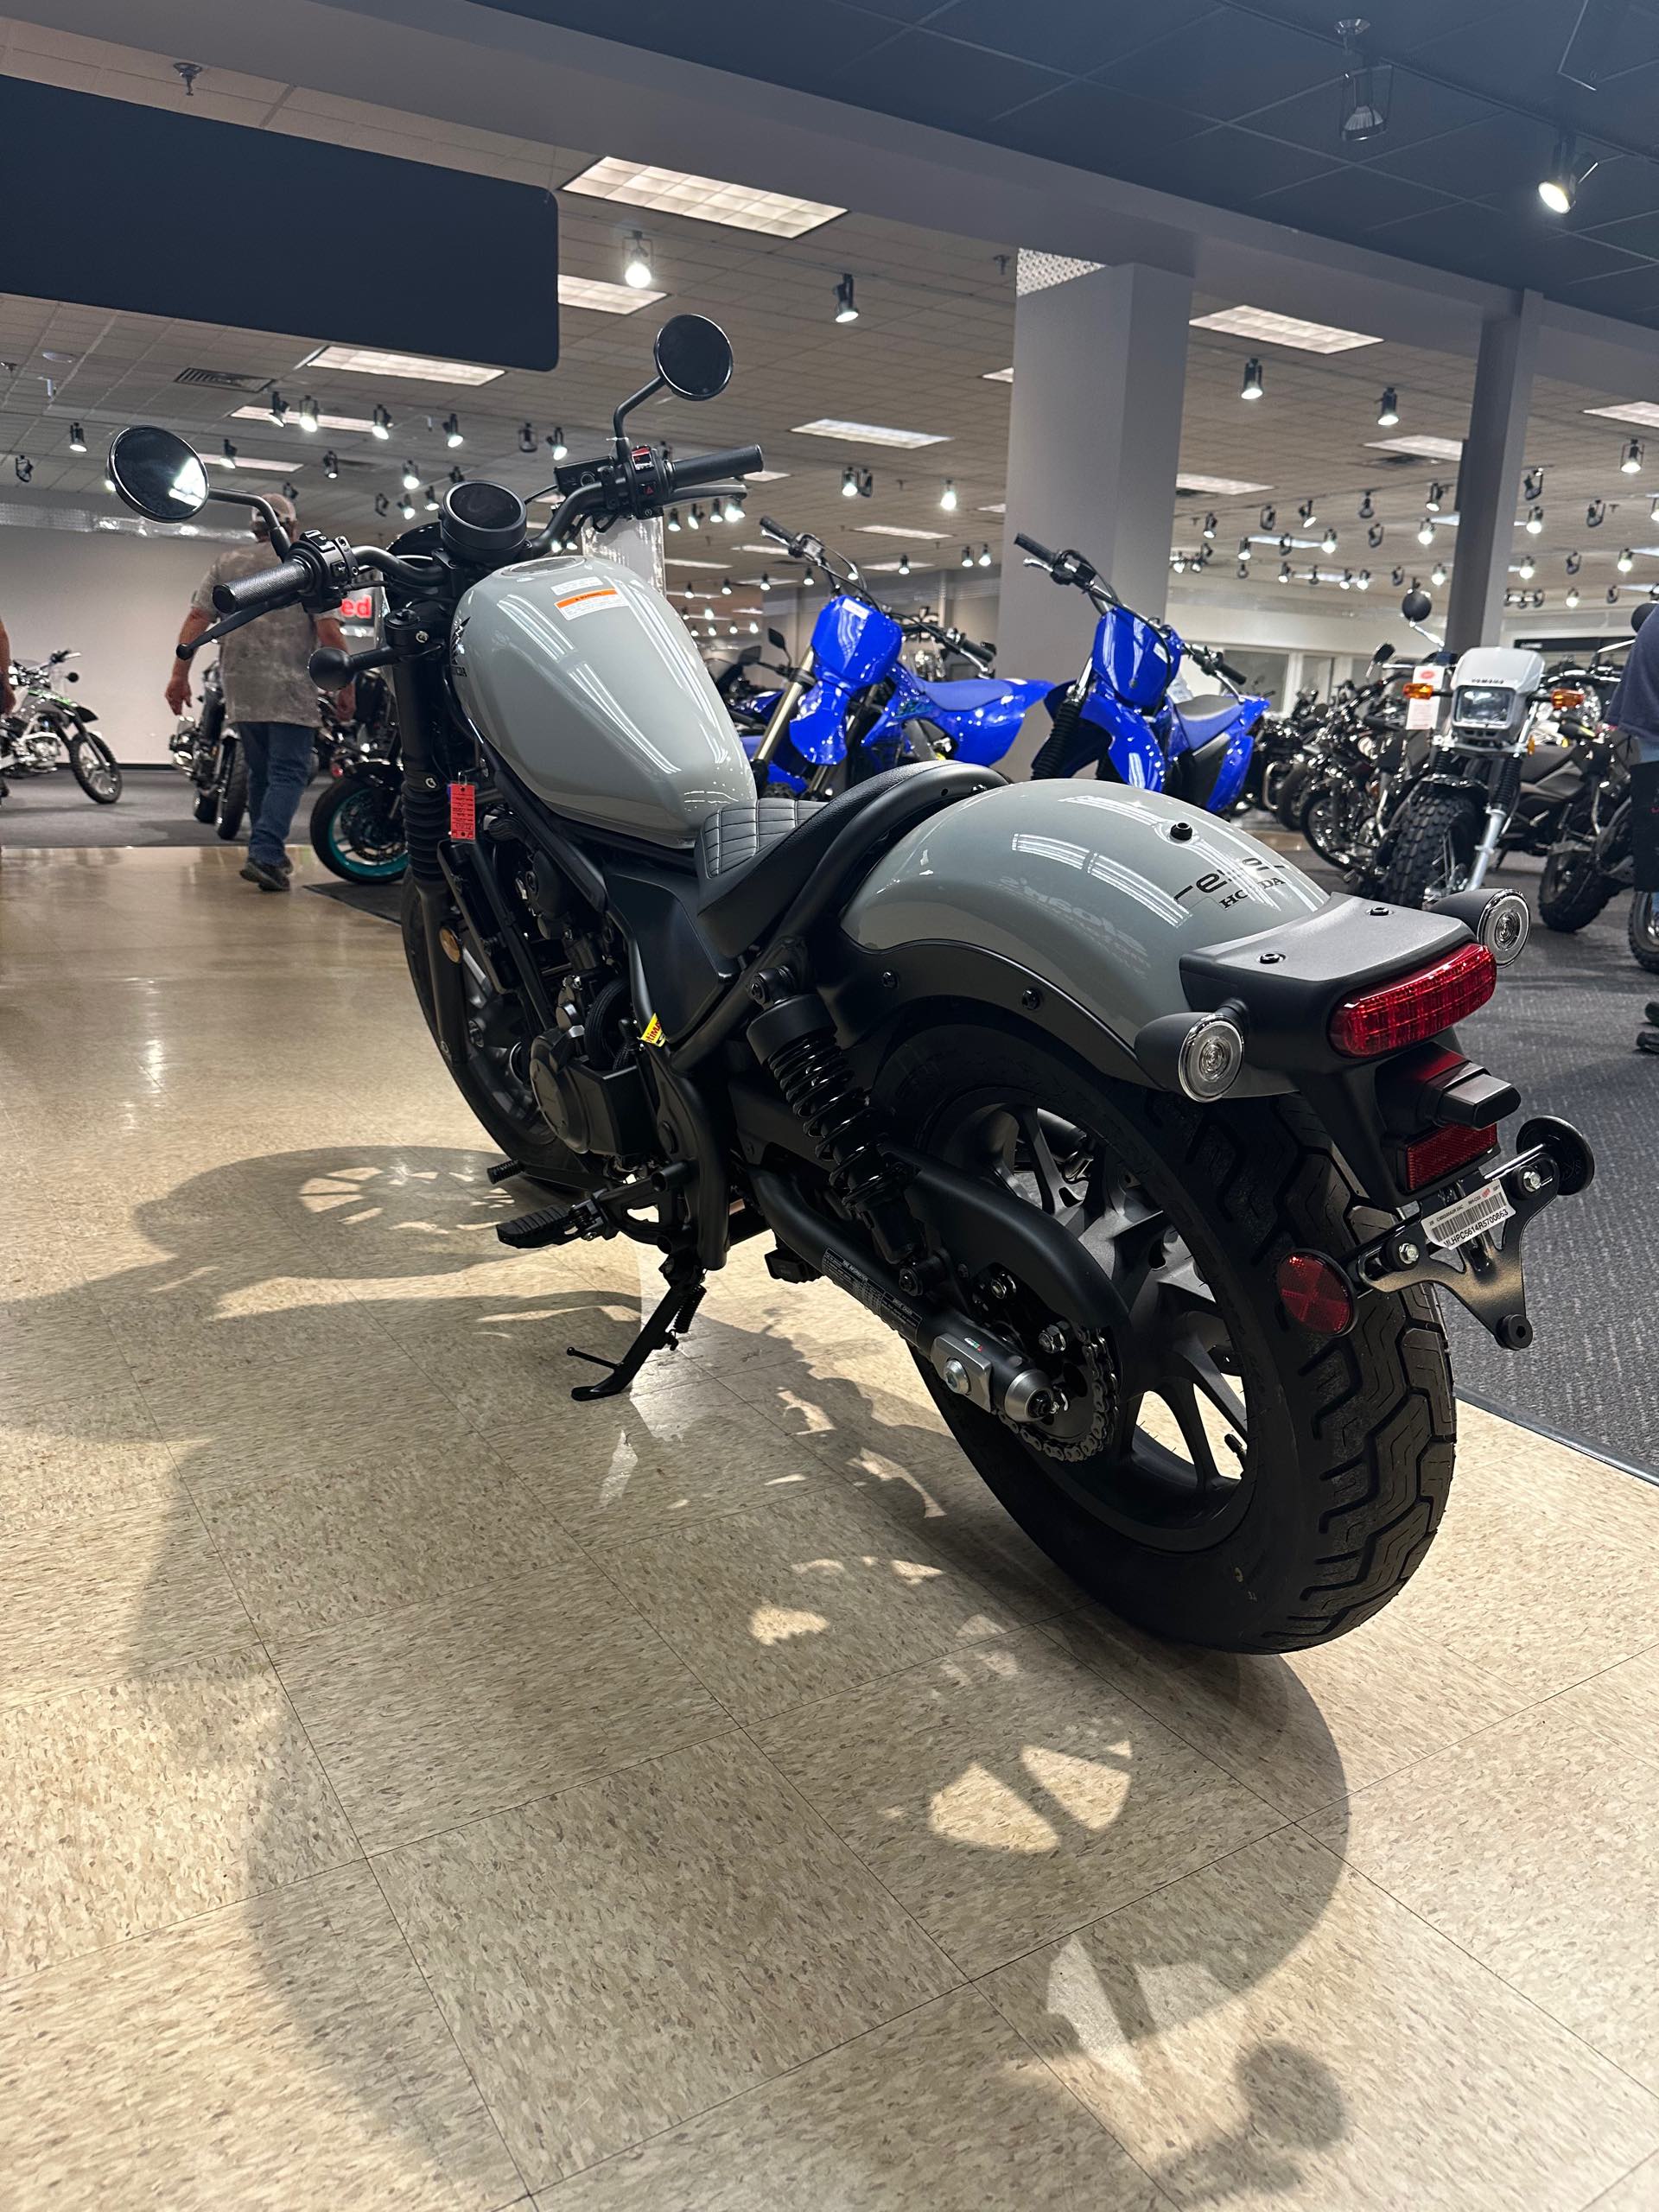 2024 Honda Rebel 500 ABS SE at Sloans Motorcycle ATV, Murfreesboro, TN, 37129